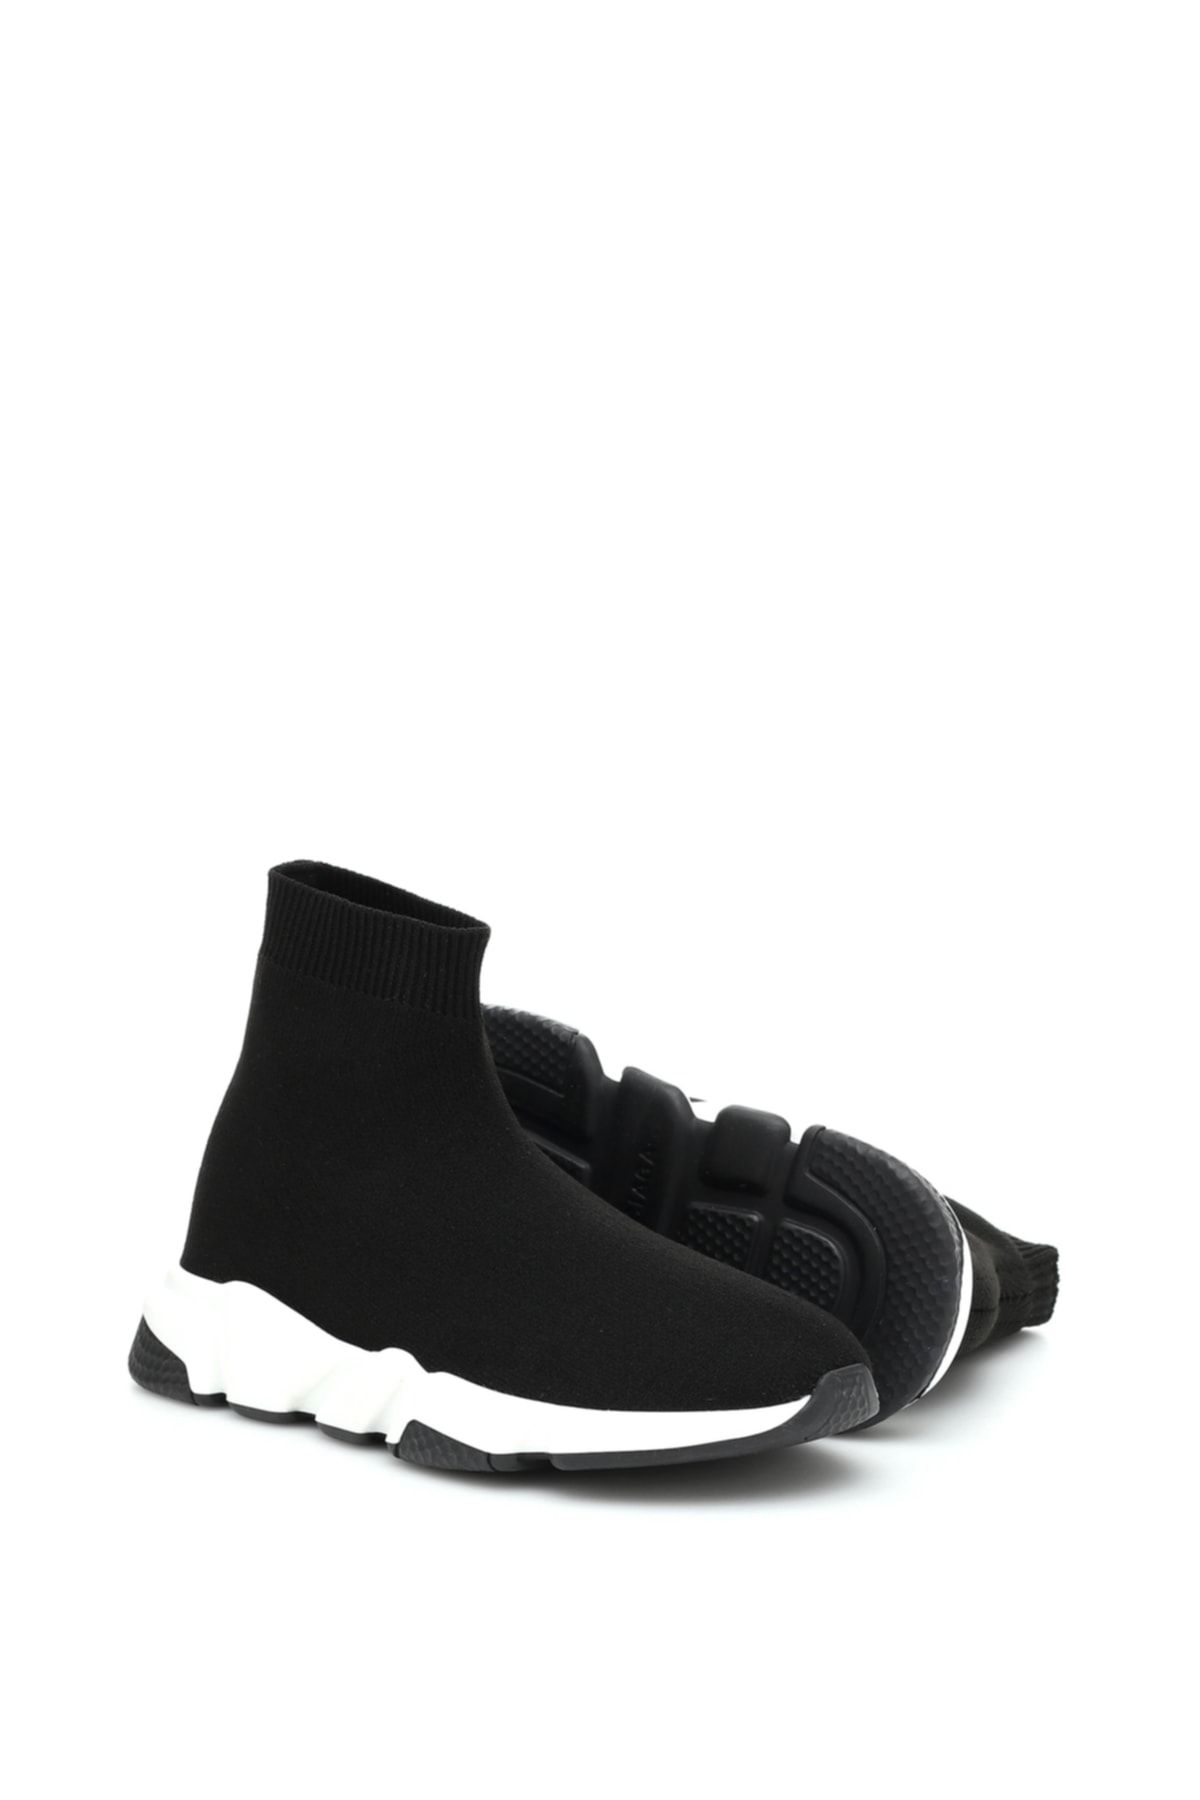 Just Shoes Kadın Çorap Spor Ayakkabı Siyah Beyaz Yüksek Taban Sneaker -1beden Küçük Alınız